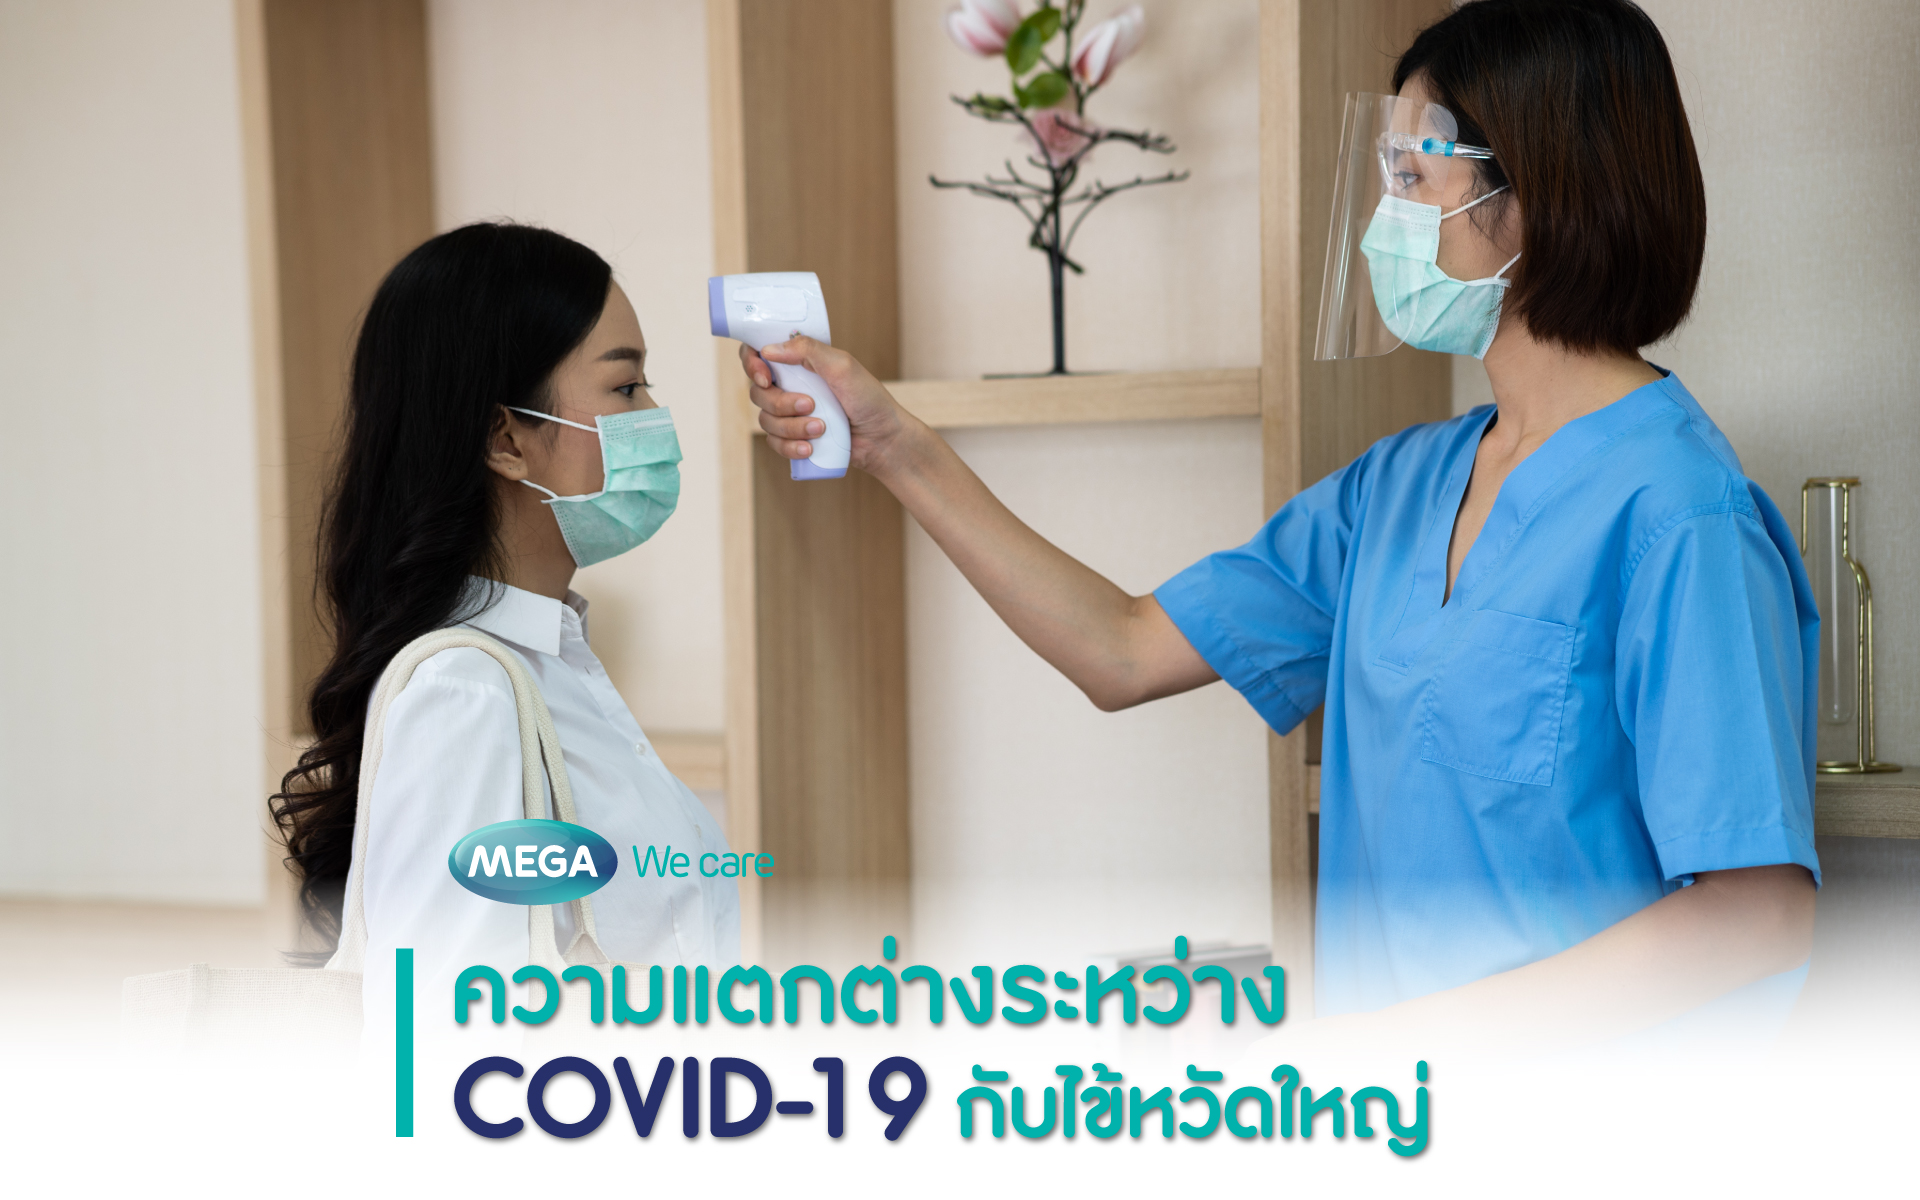 ความแตกต่างระหว่าง COVID-19 กับไข้หวัดใหญ่